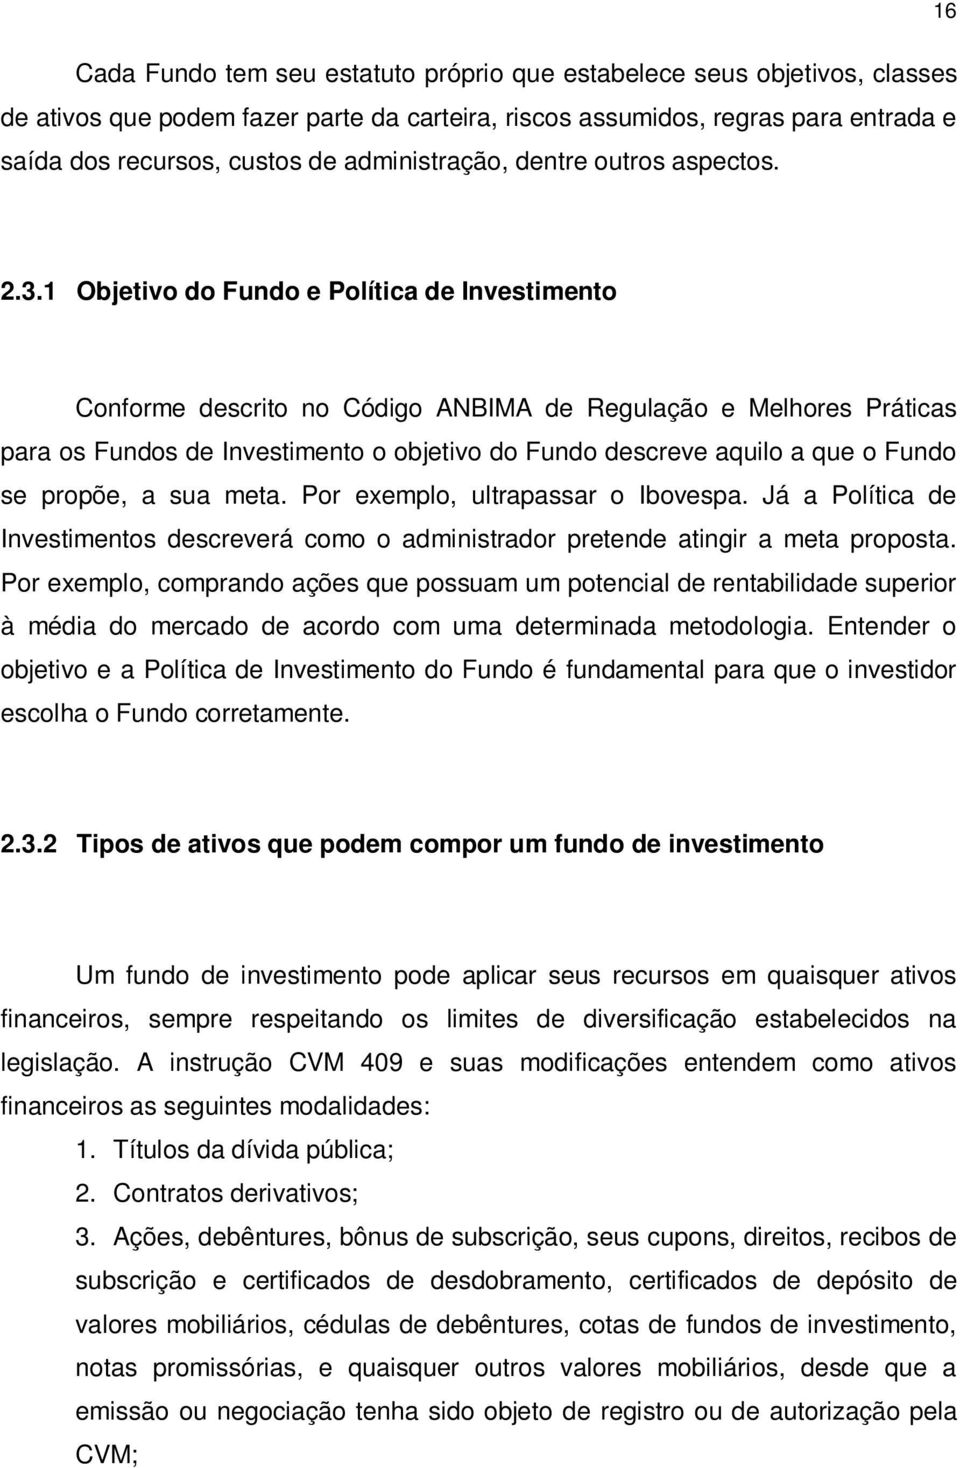 1 Objetivo do Fundo e Política de Investimento Conforme descrito no Código ANBIMA de Regulação e Melhores Práticas para os Fundos de Investimento o objetivo do Fundo descreve aquilo a que o Fundo se